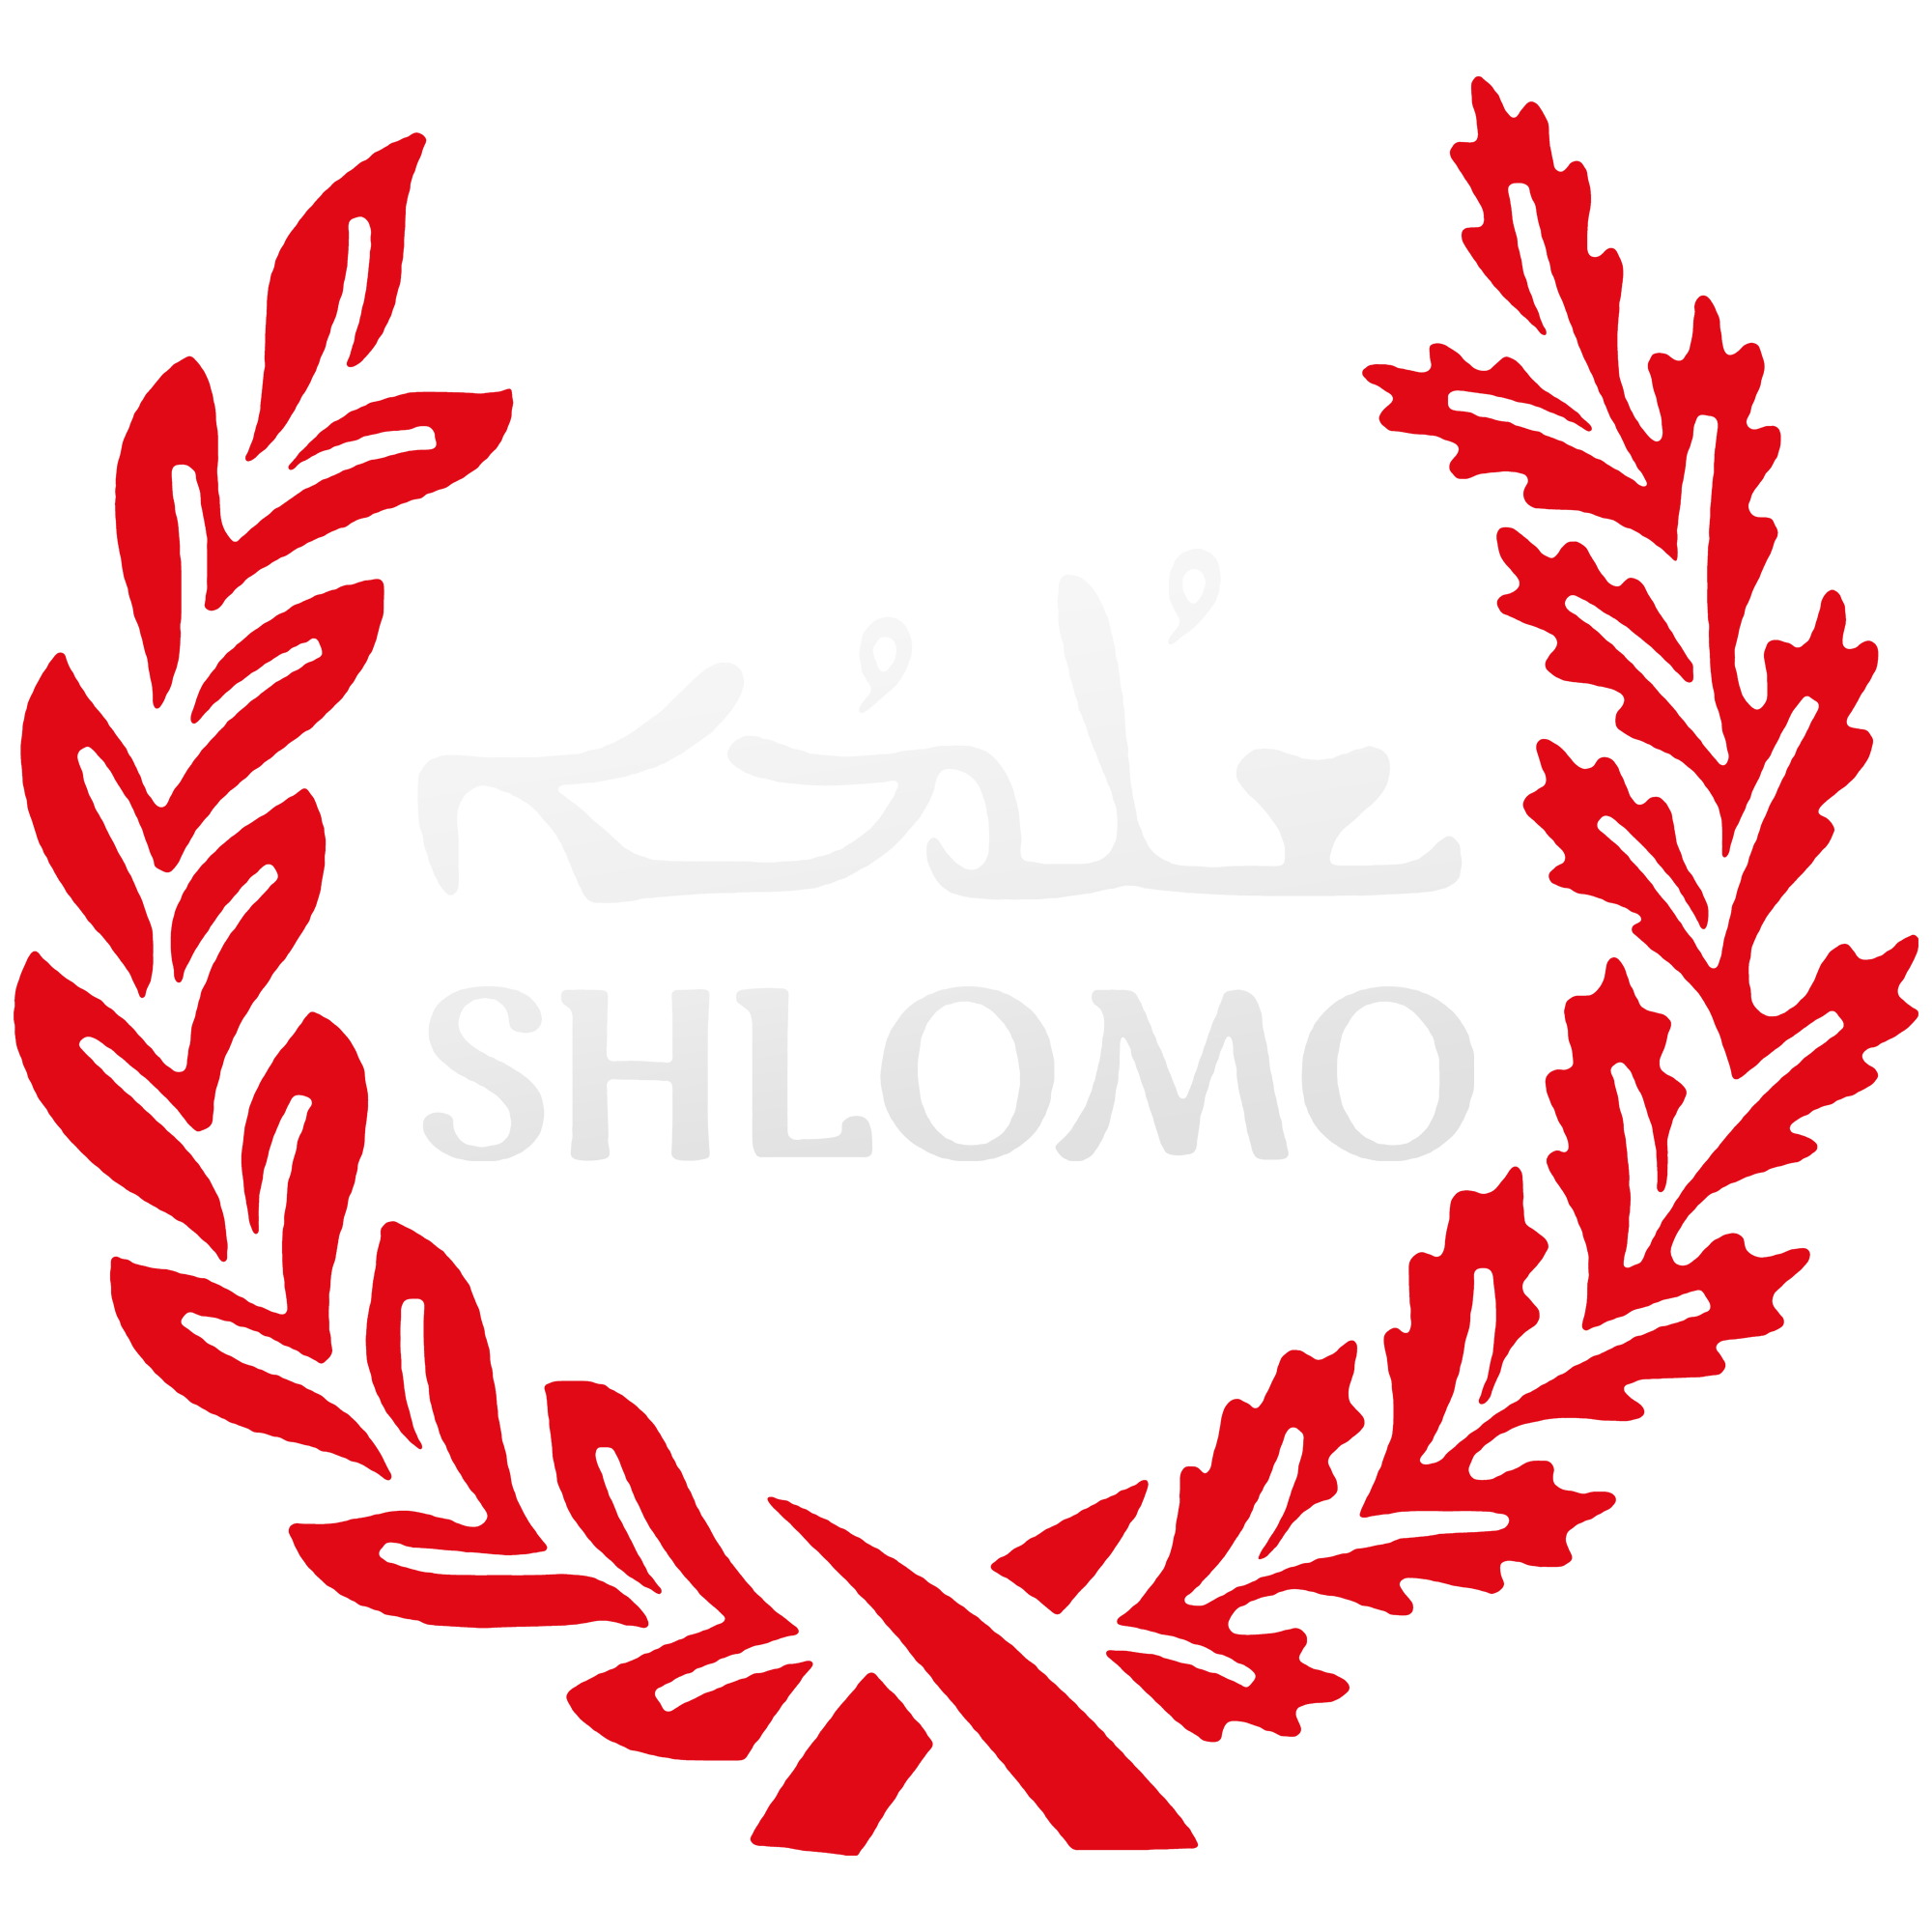 Das ist das Shlomo Logo.